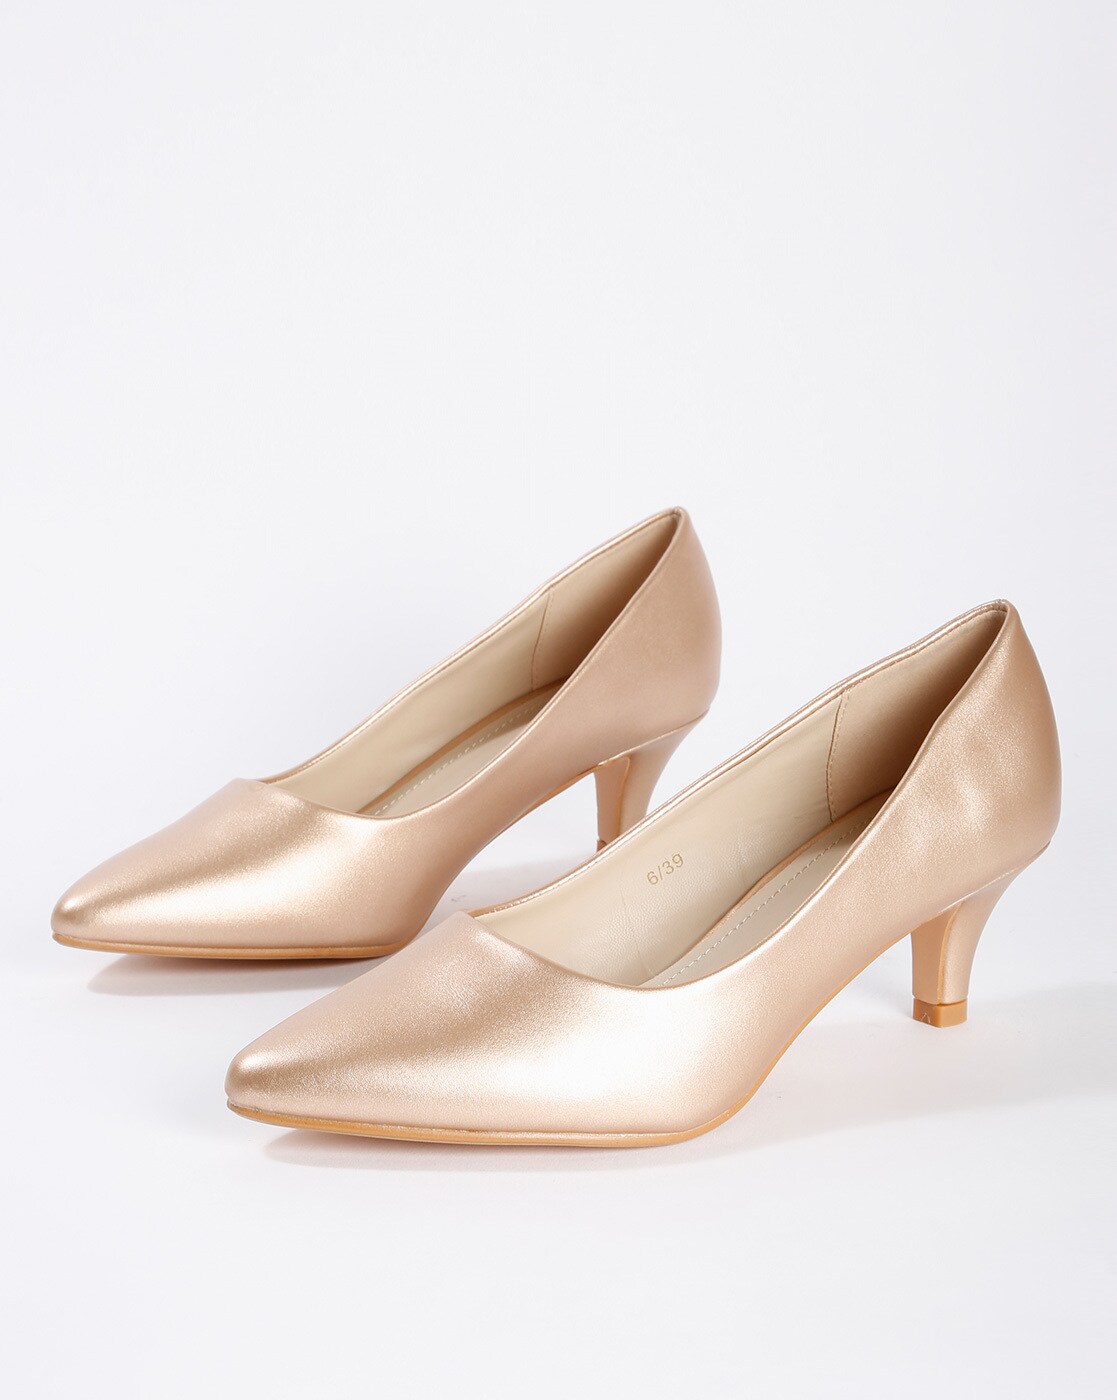 carlton london heels online